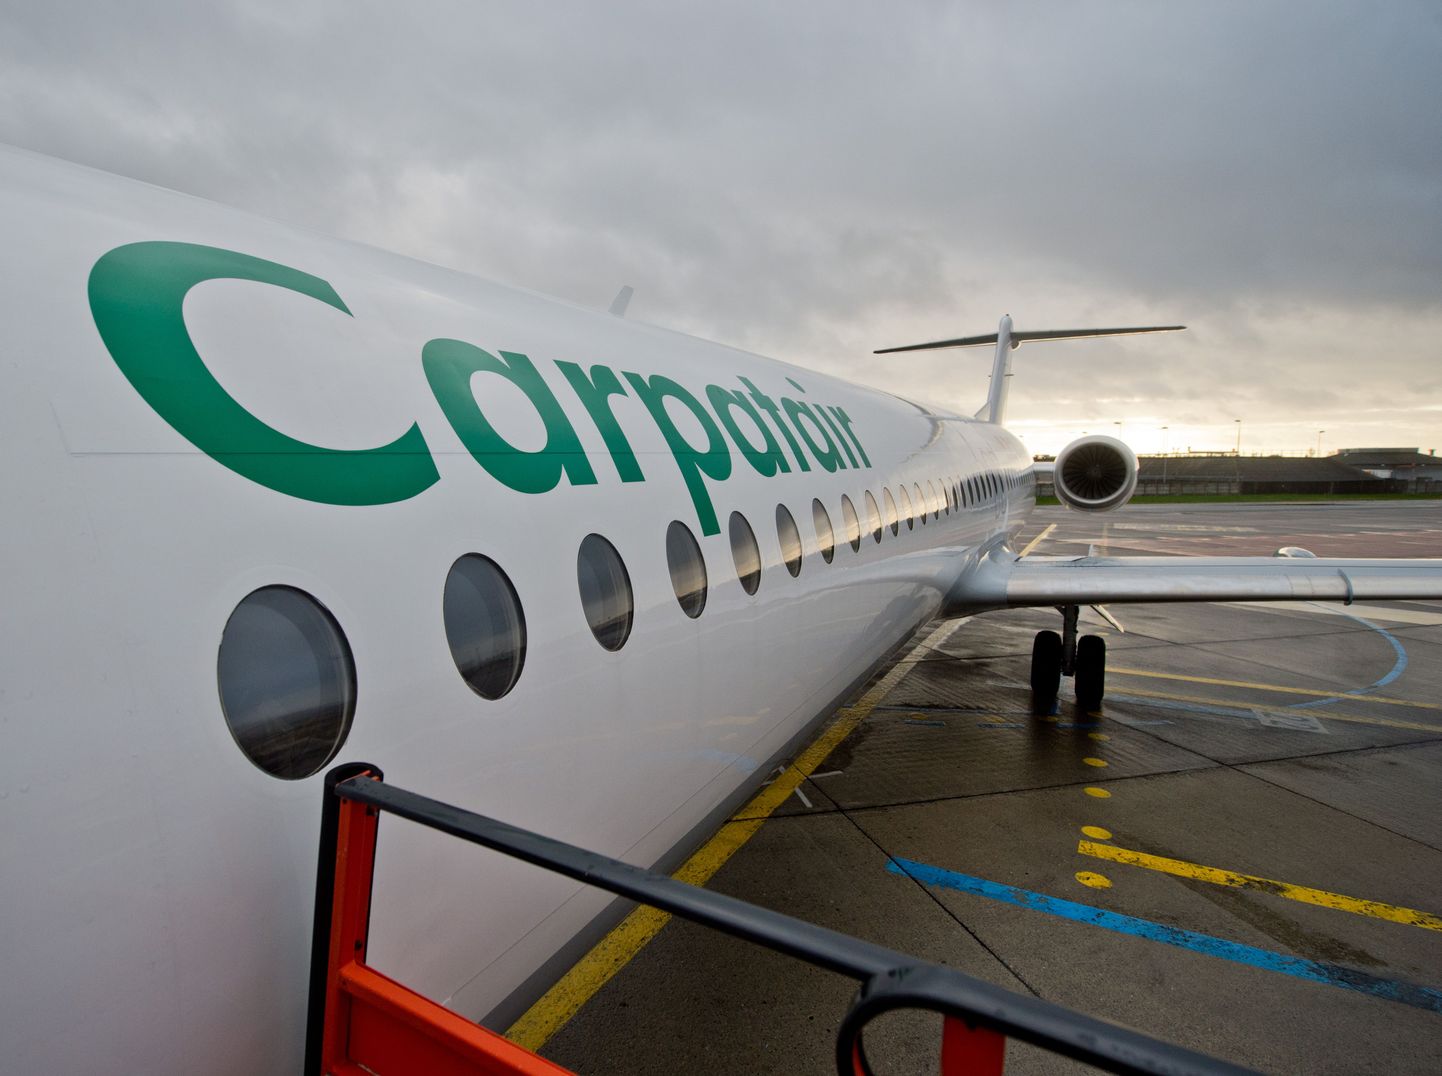 Carpatairi Fokker 100 lennukid teenindasid ka Nordica esimesi lende.